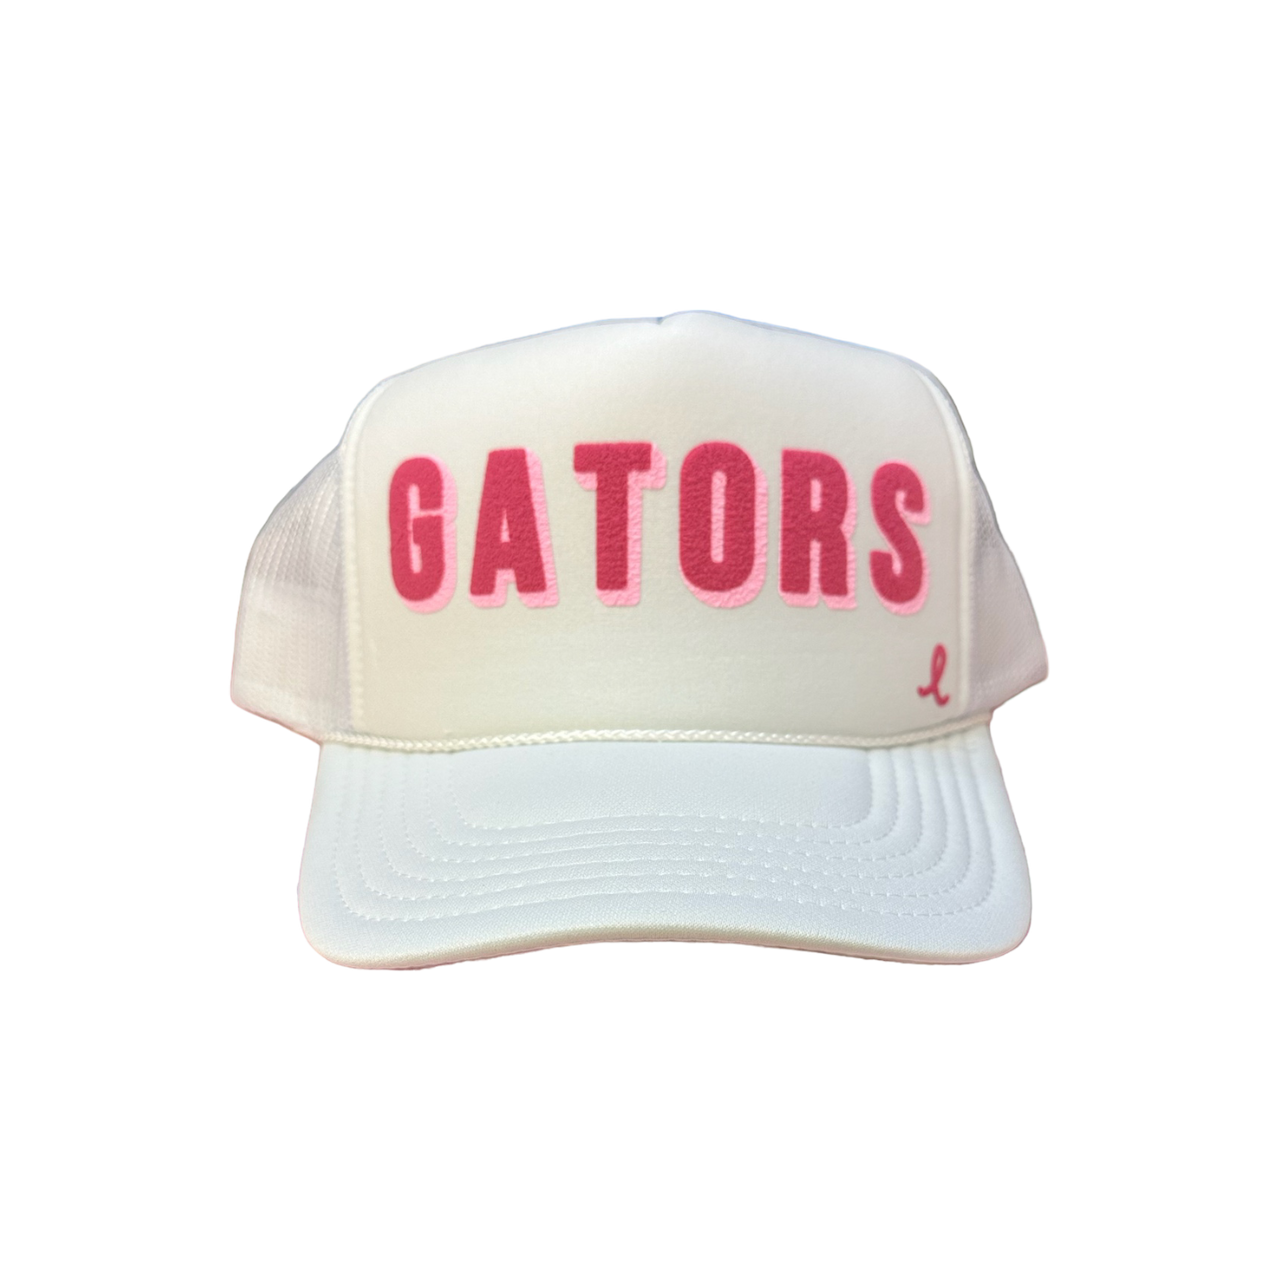 Gators (PINK) - Puffy White Trucker